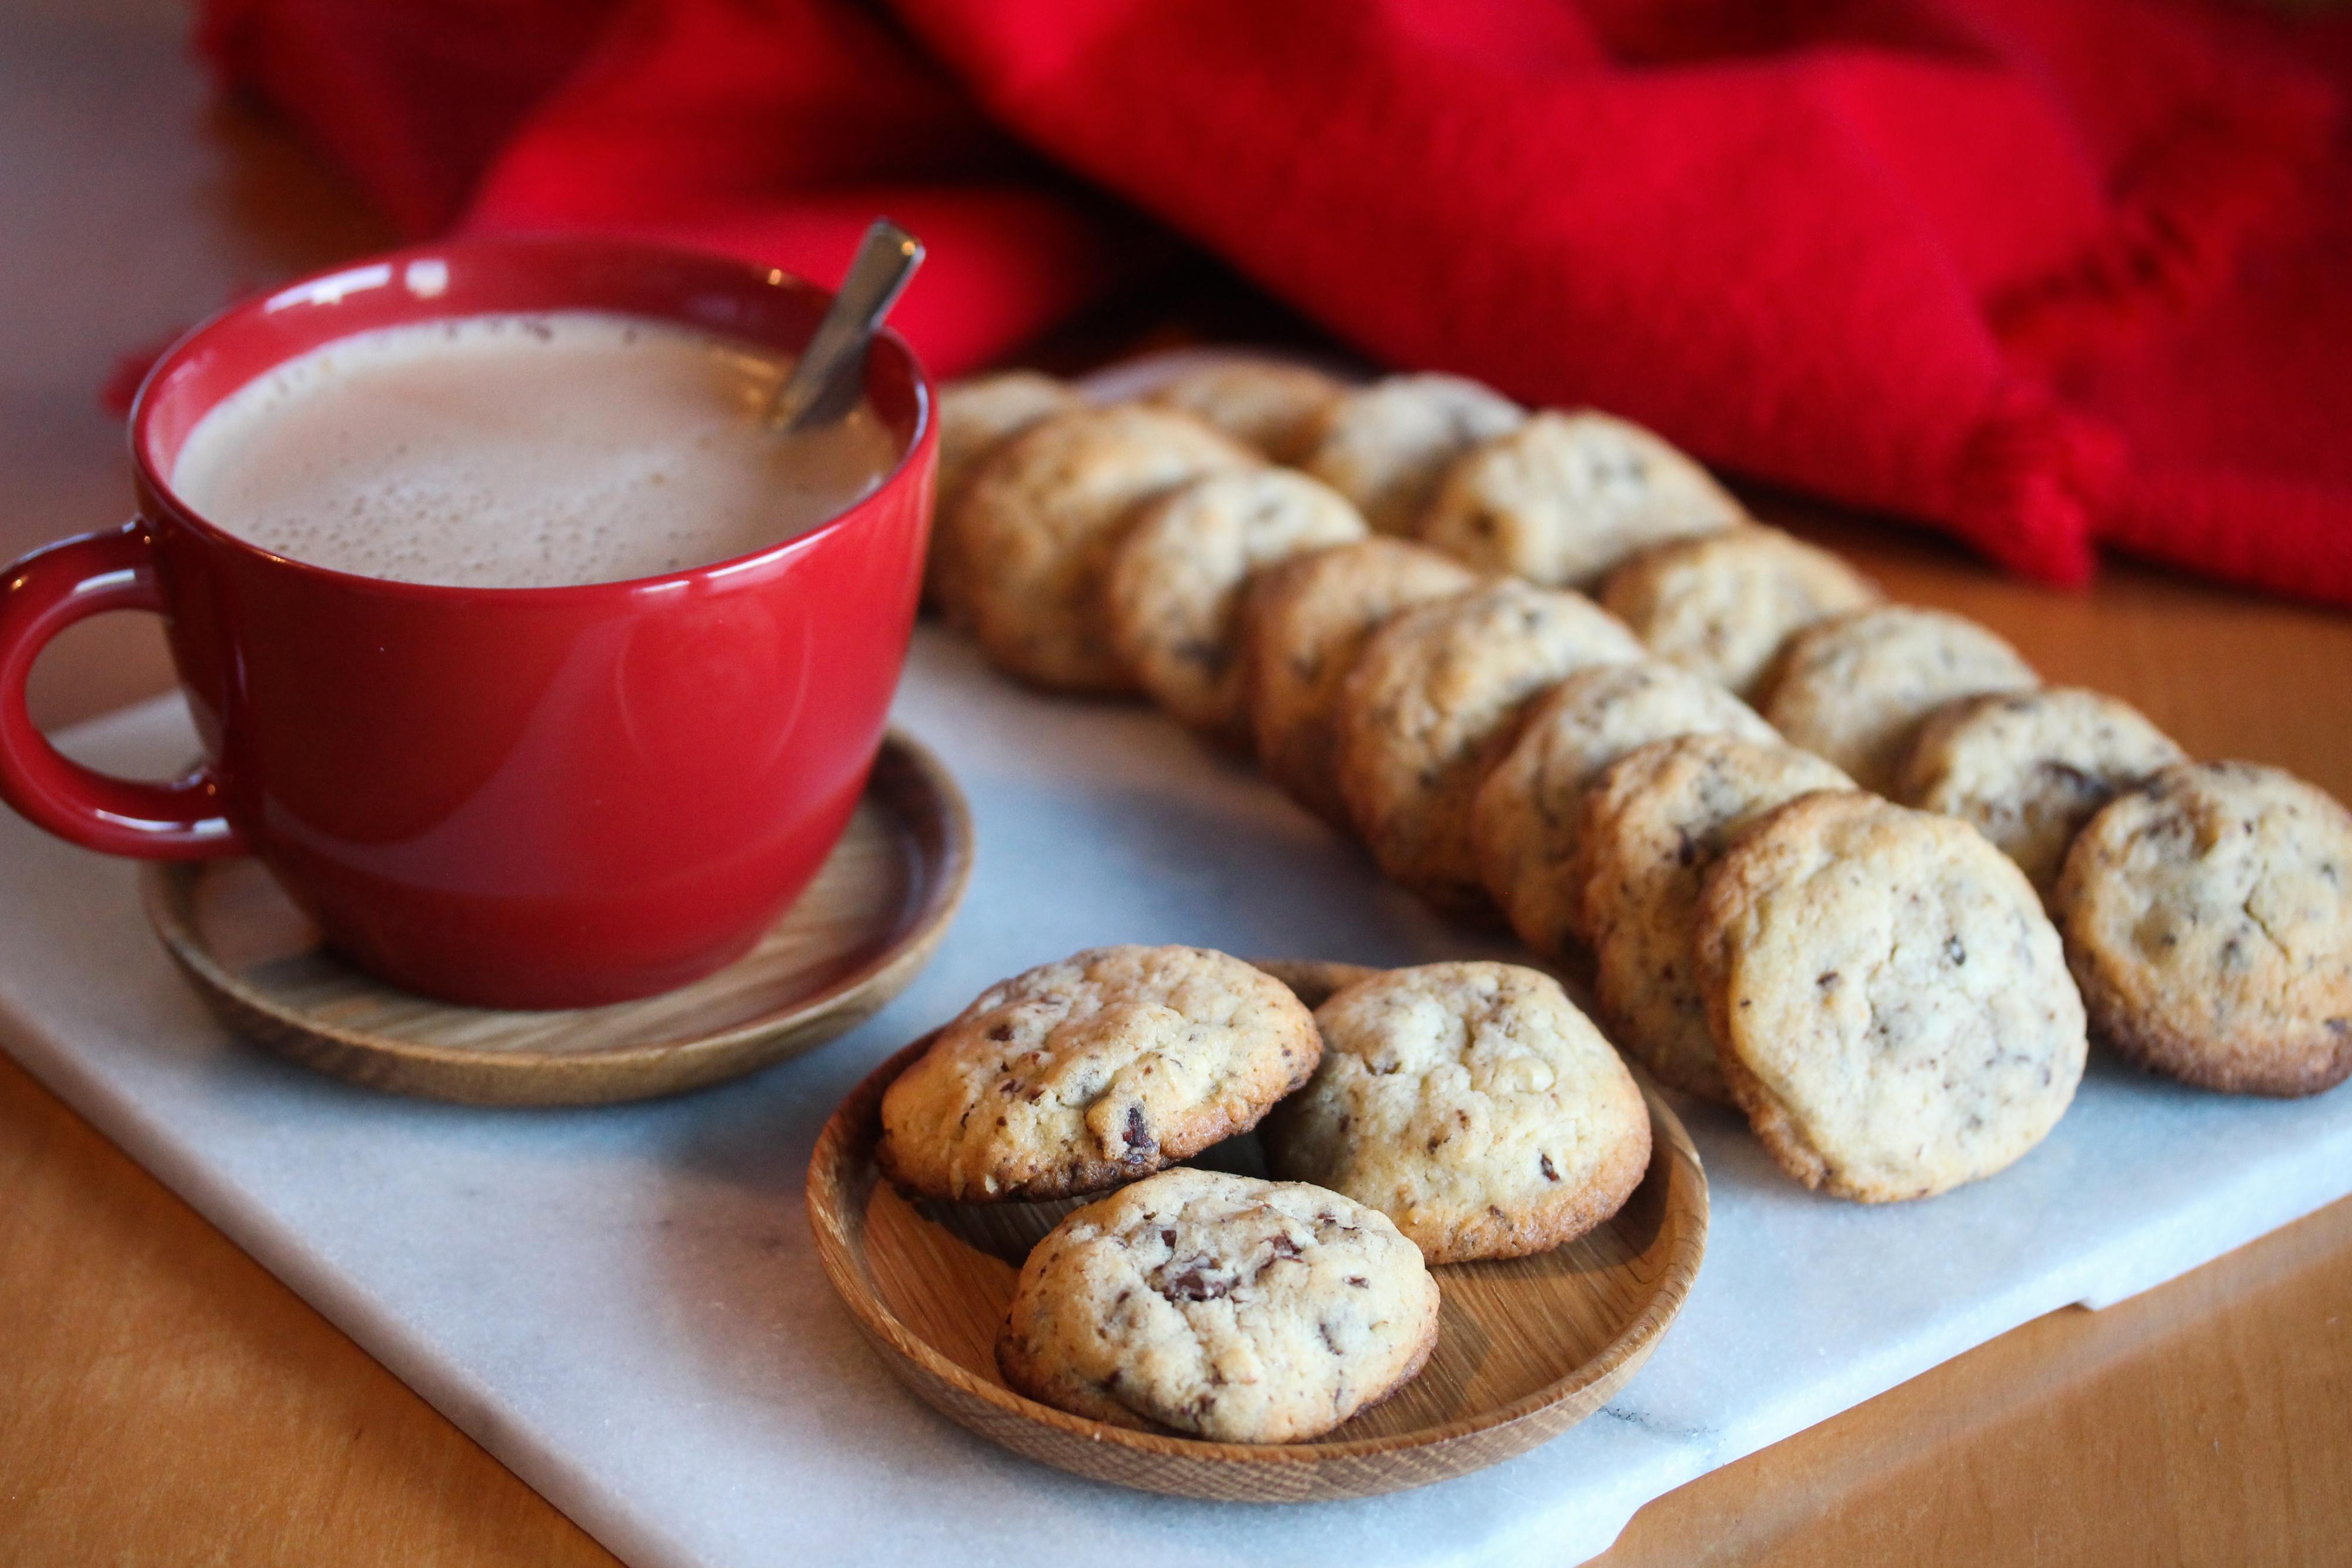 Julekjeks, eller julecookies, er populære småkaker frem mot jul.